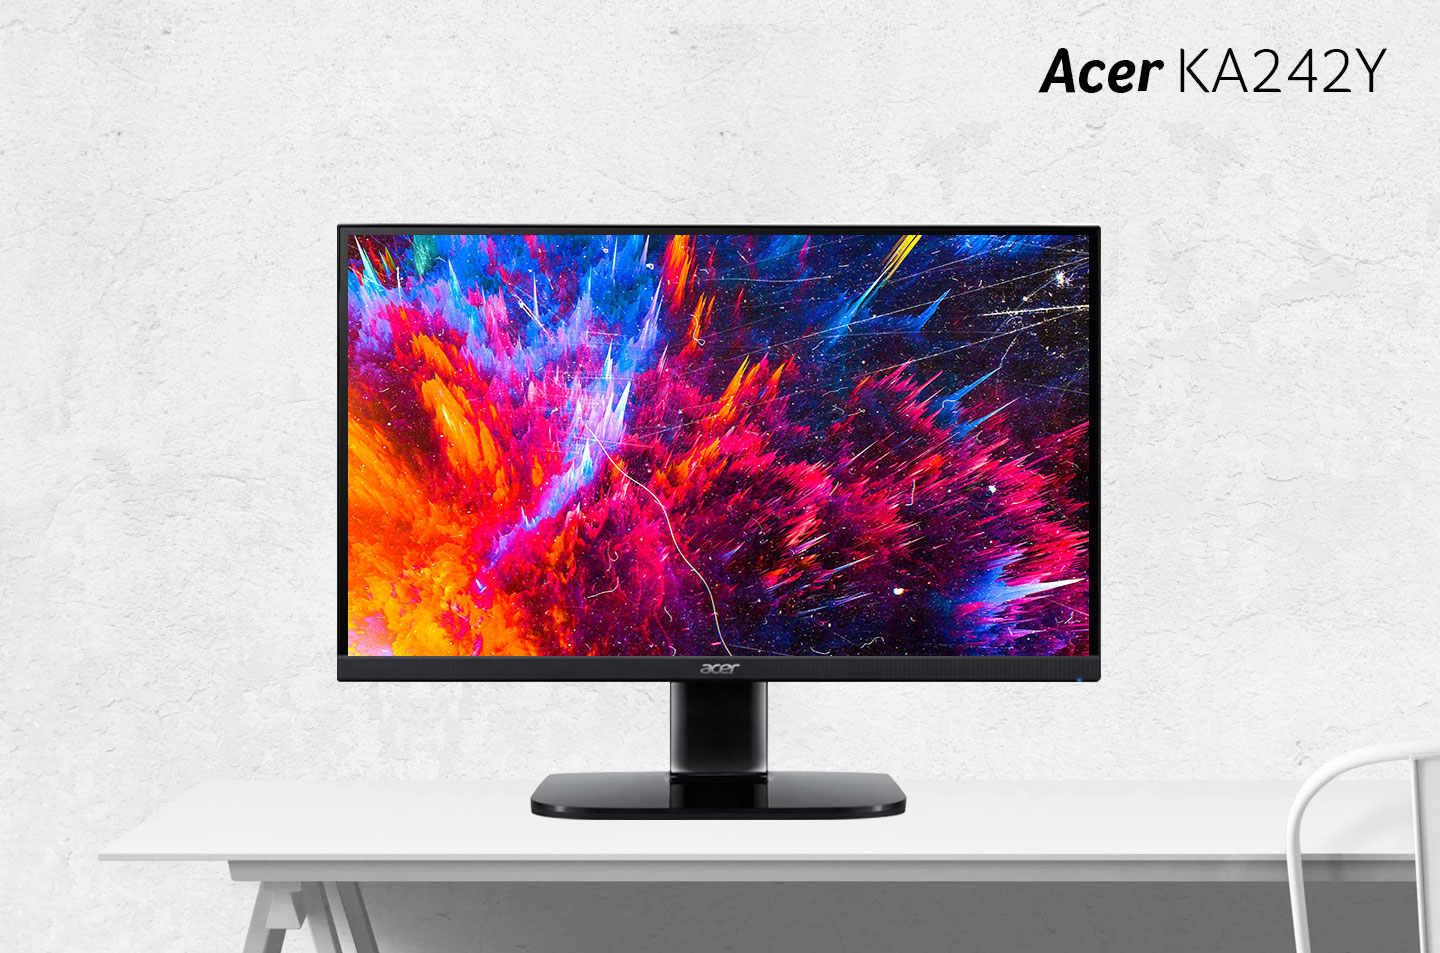 monitor-acer-ka242y-visual-tajam-dengan-desain-modern-ergonomis